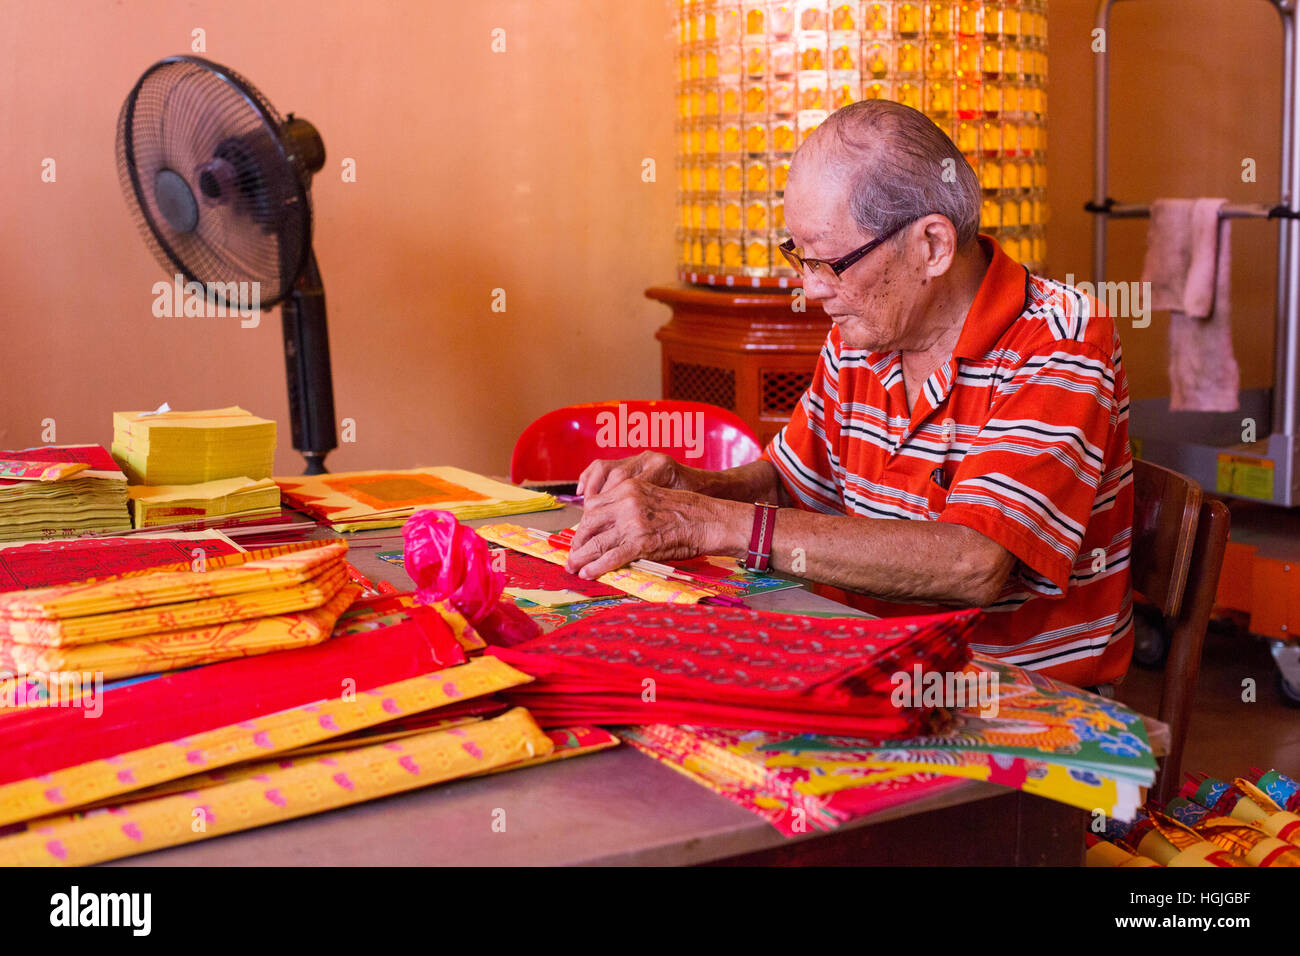 Un homme chinois offres bundles prépare en prévision de la Nouvelle Année lunaire chinoise. Banque D'Images